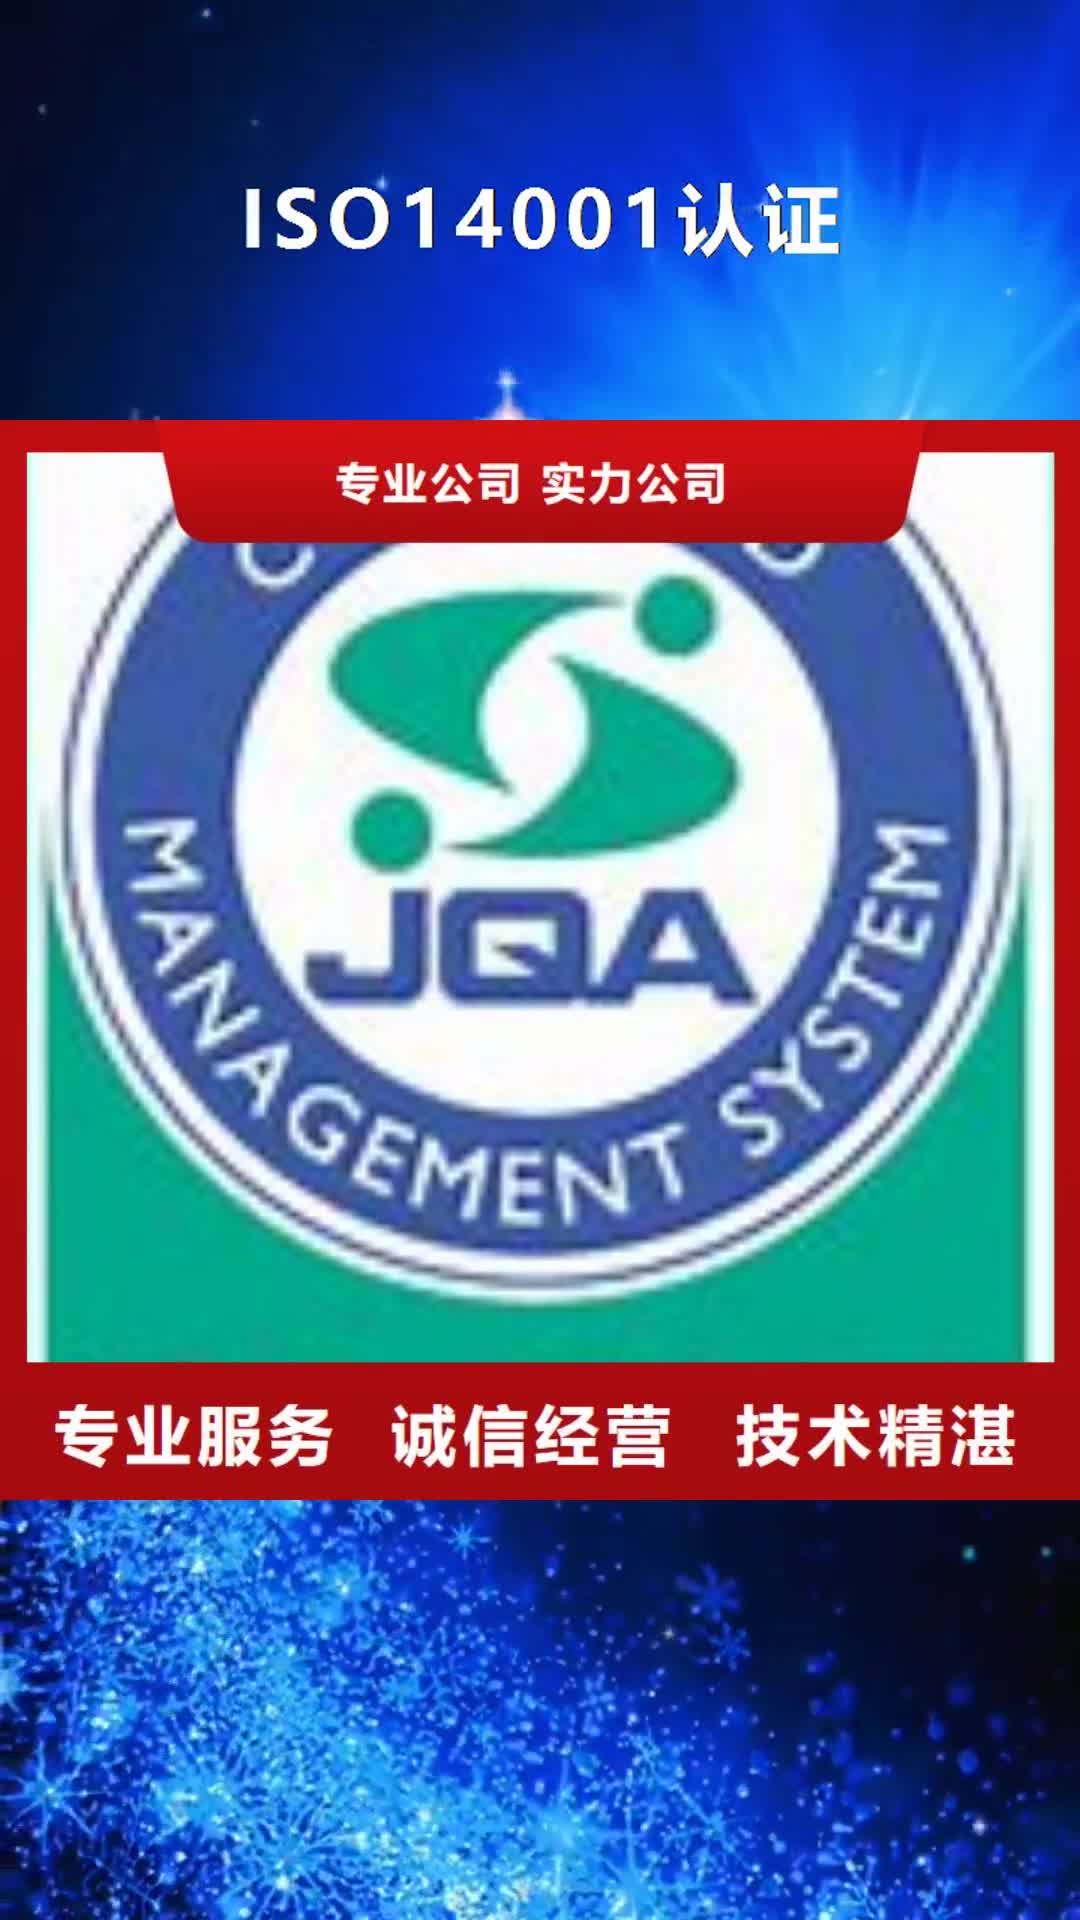 【宜昌 ISO14001认证AS9100认证品质好】